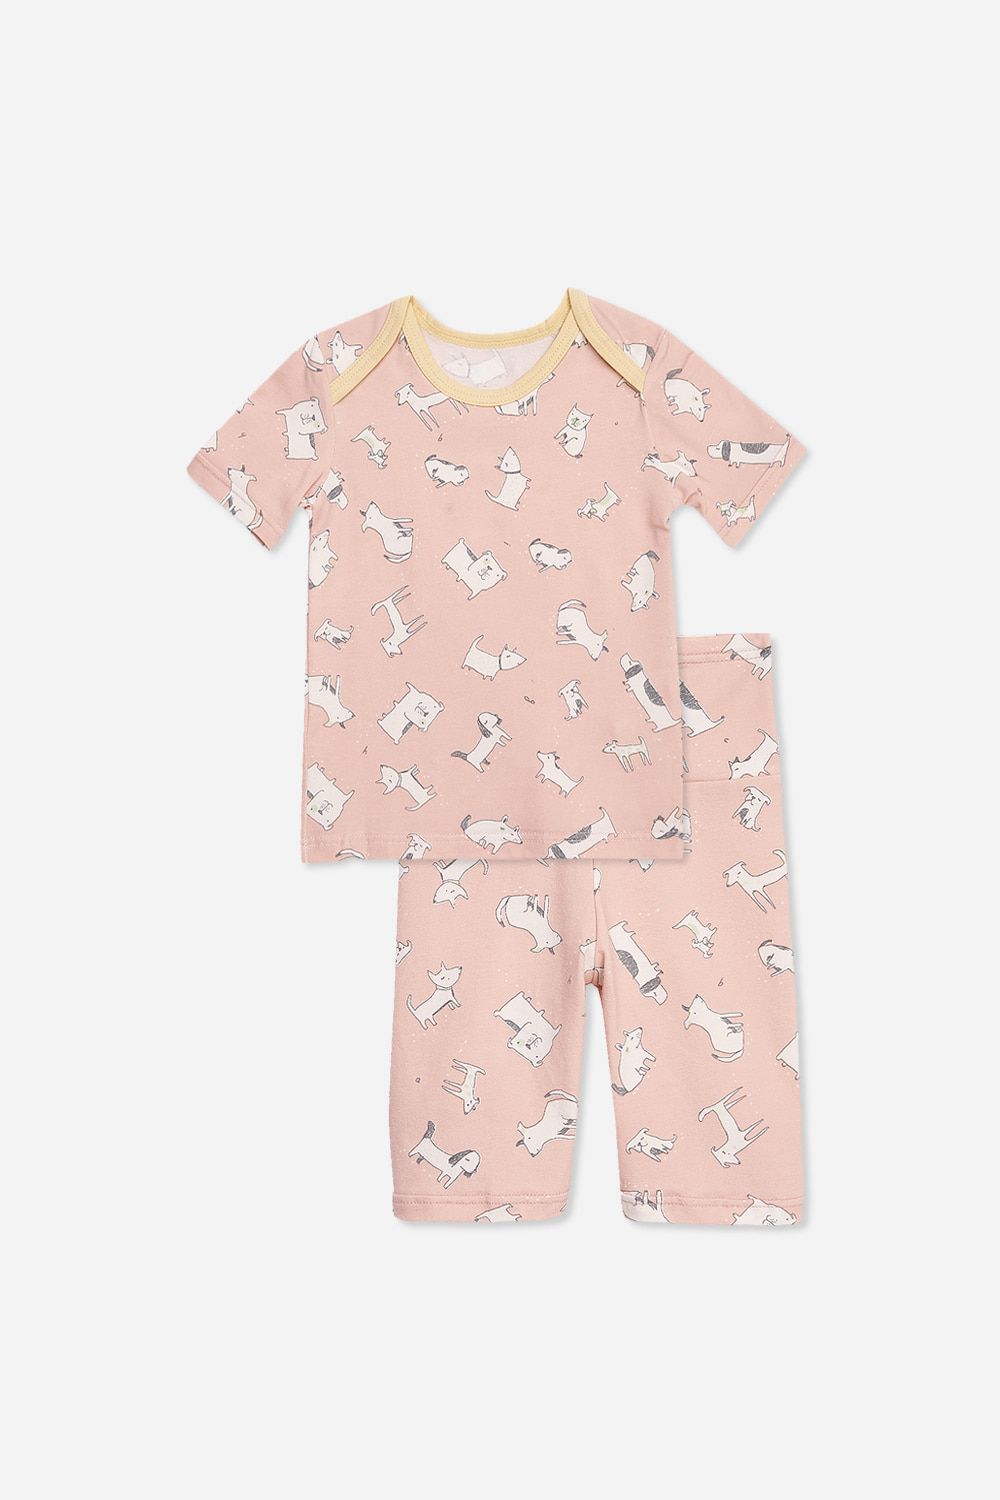 핑크댕댕이 베이비-5부잠옷, 홈웨어, 아동내복, 아동속옷,성인잠옷,고후나비